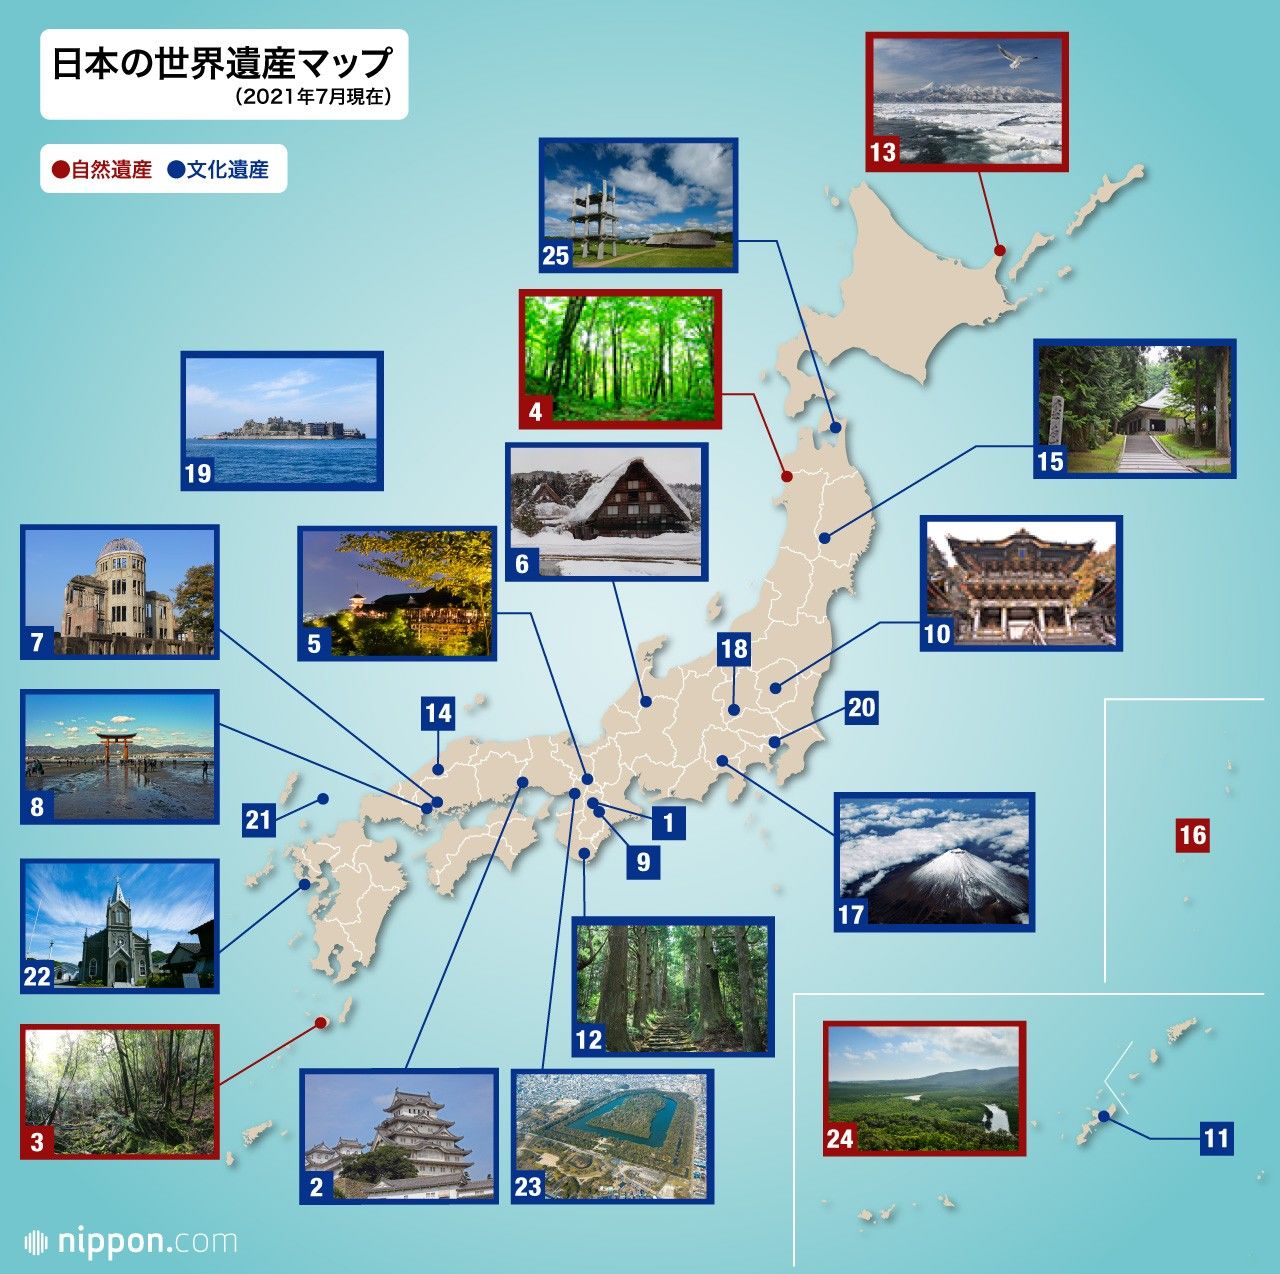 日本の世界遺産一覧 | nippon.com